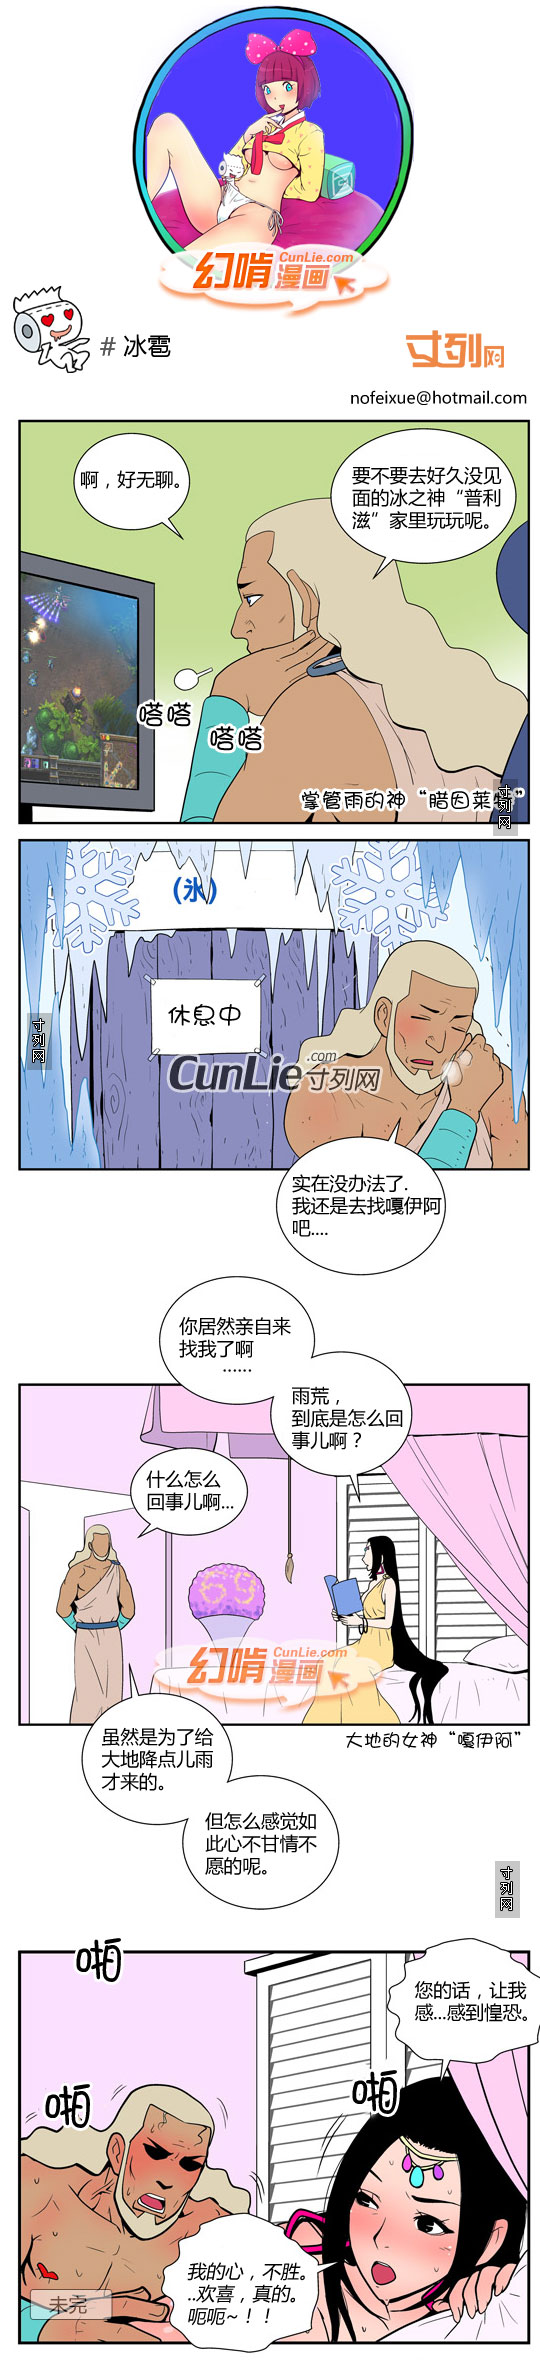 幻啃漫画冰雹